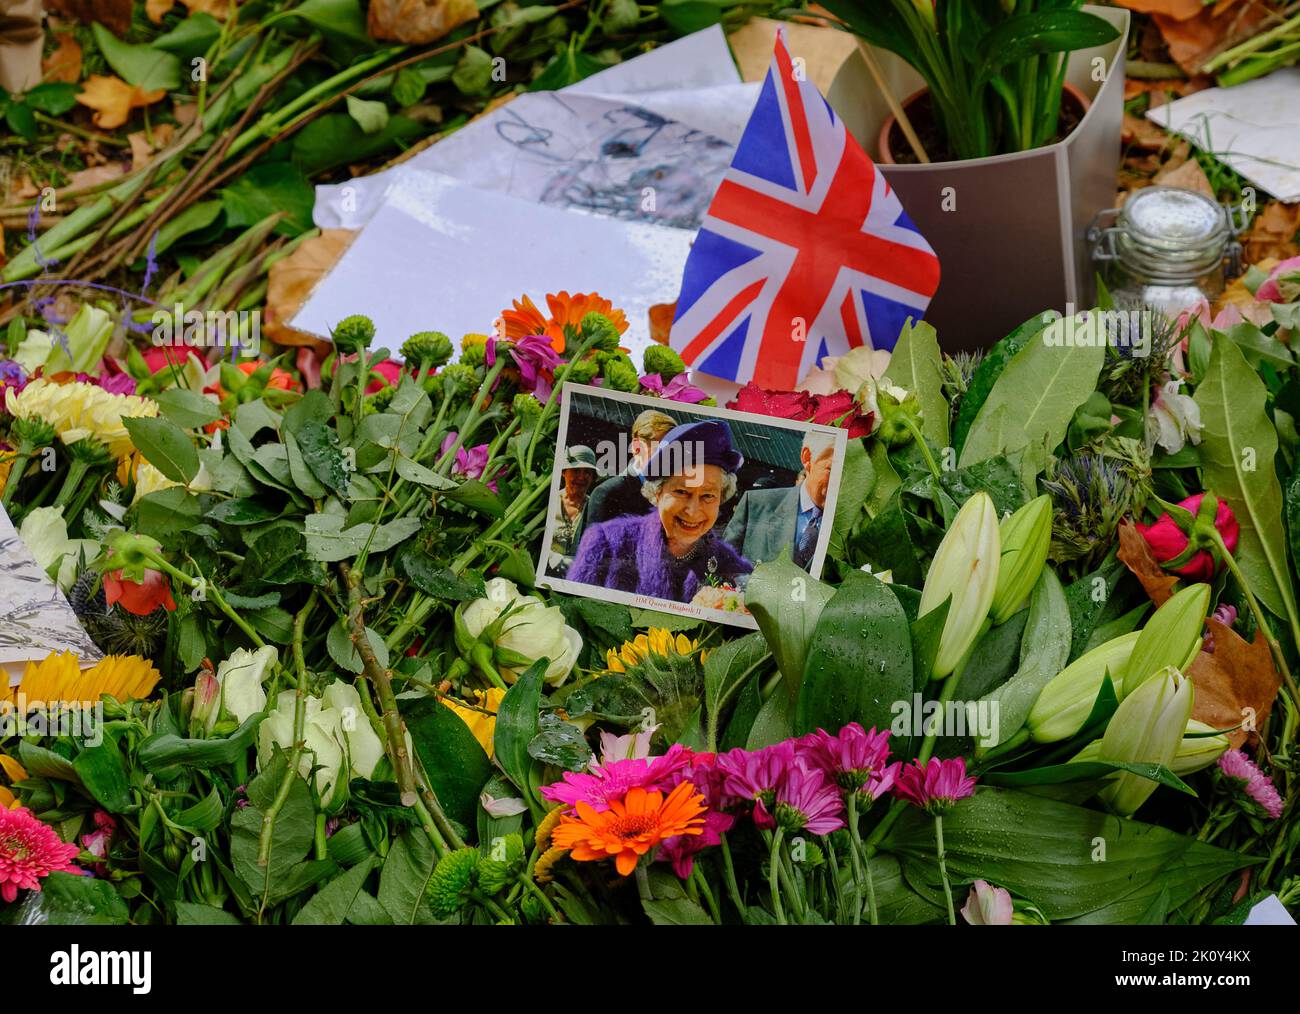 Hommages floraux à la fin de la Reine festoon le parc de Green Park à Londres Banque D'Images